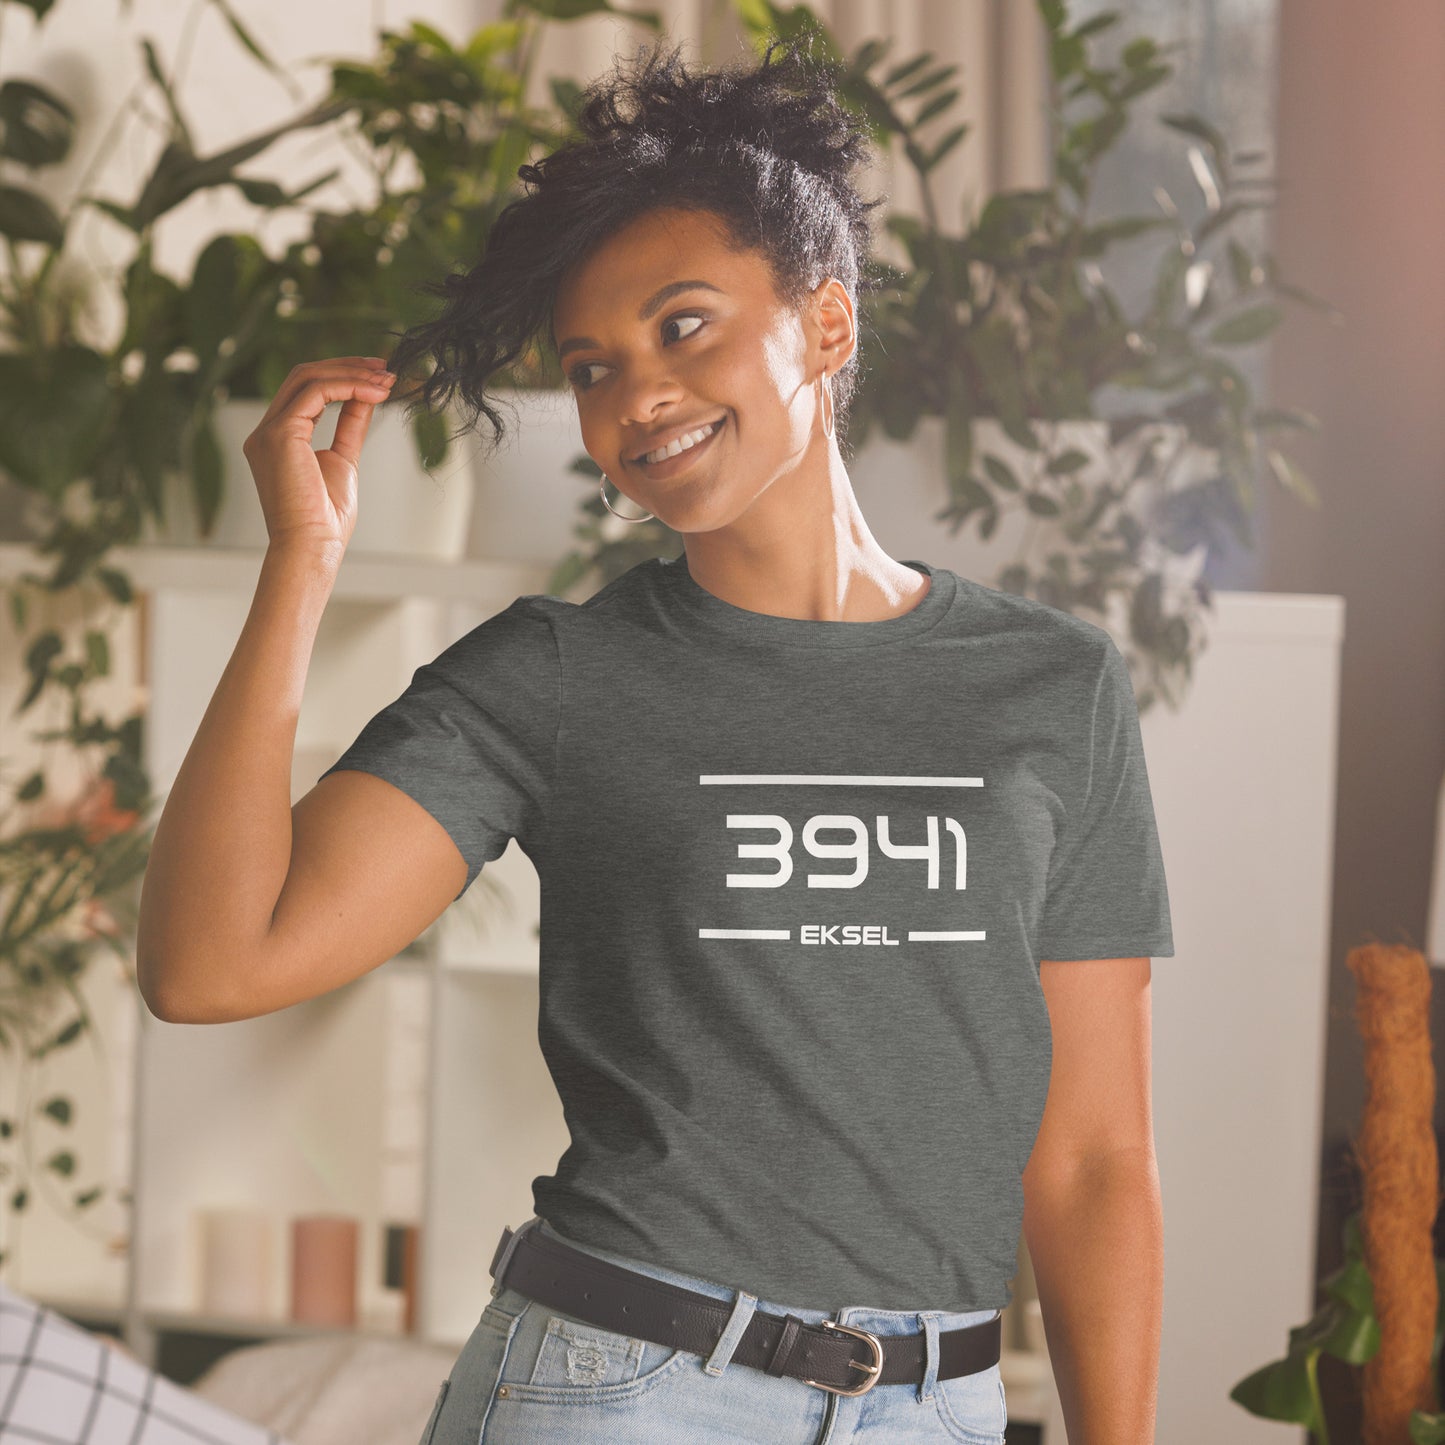 Tshirt - 3941 - Eksel